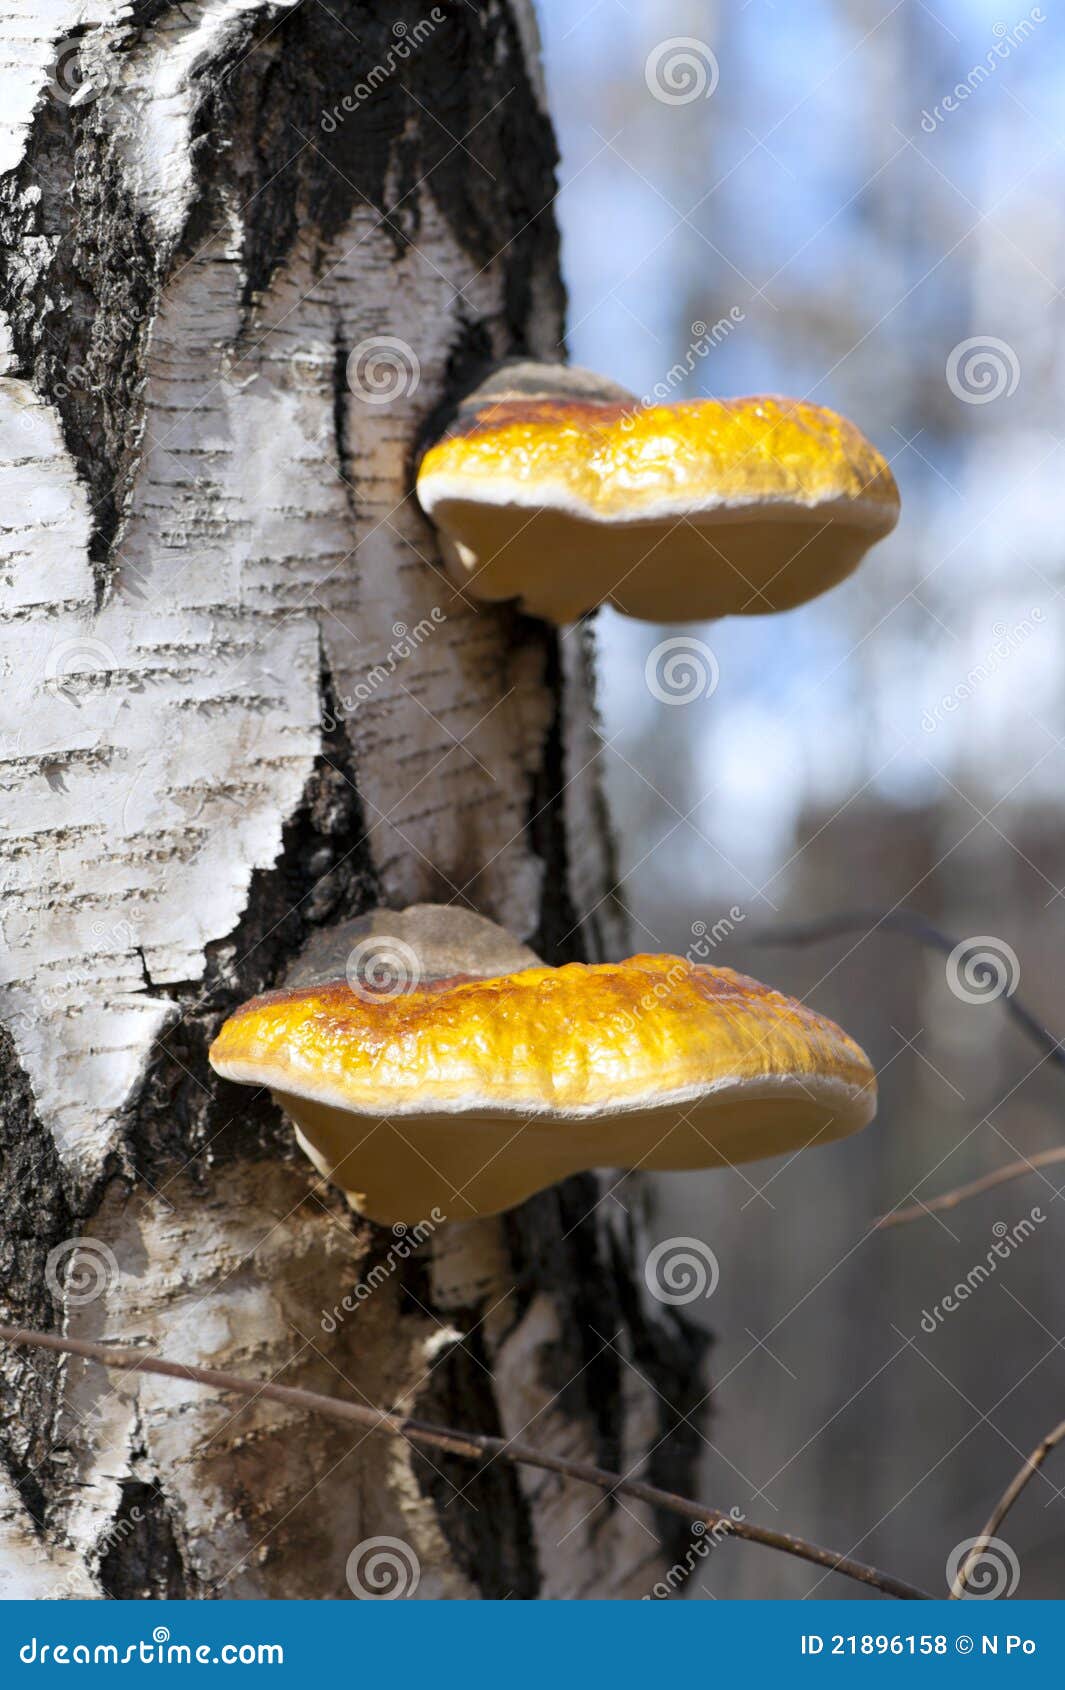 birch polypore mushrooms (piptoporus betulinus)